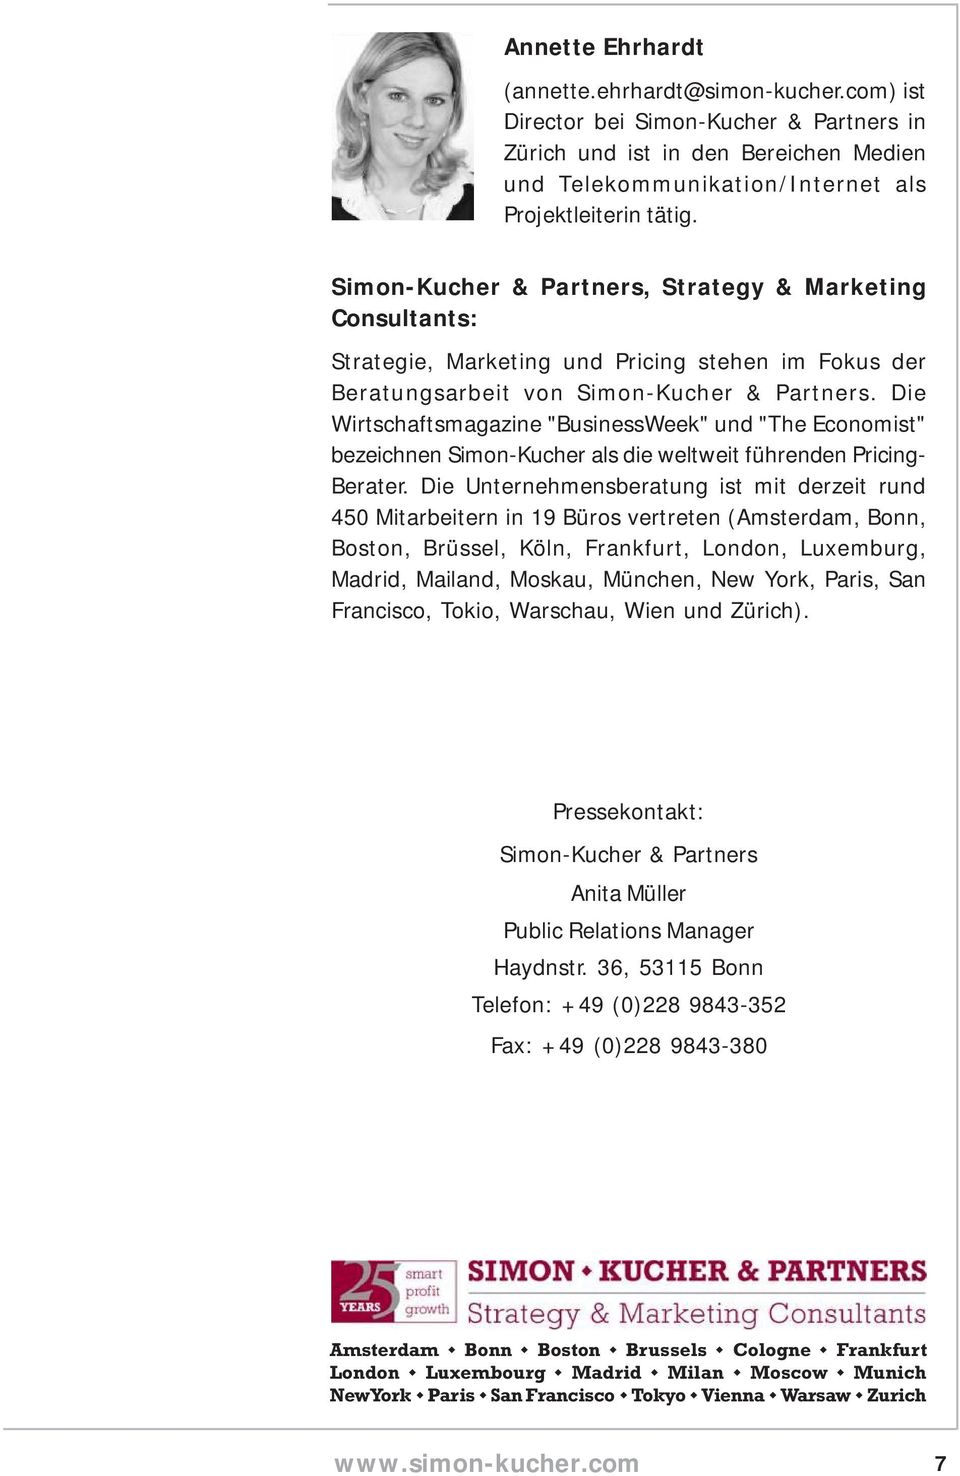 Die Wirtschaftsmagazine "BusinessWeek" und "The Economist" bezeichnen Simon-Kucher als die weltweit führenden Pricing- Berater.